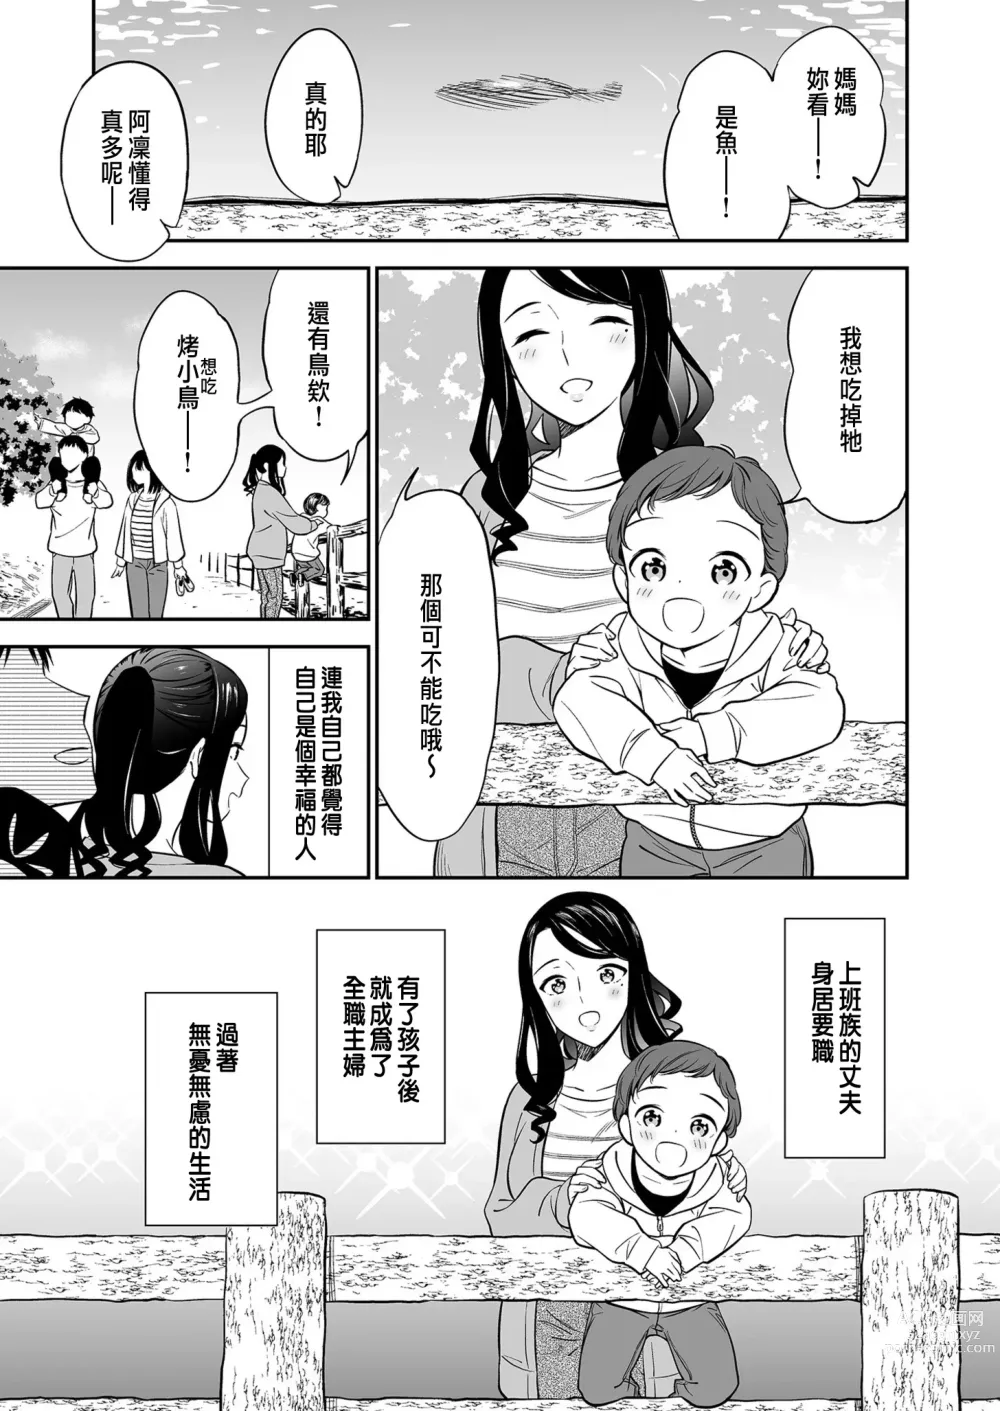 Page 5 of manga Suki nano wa Anata dake... 1